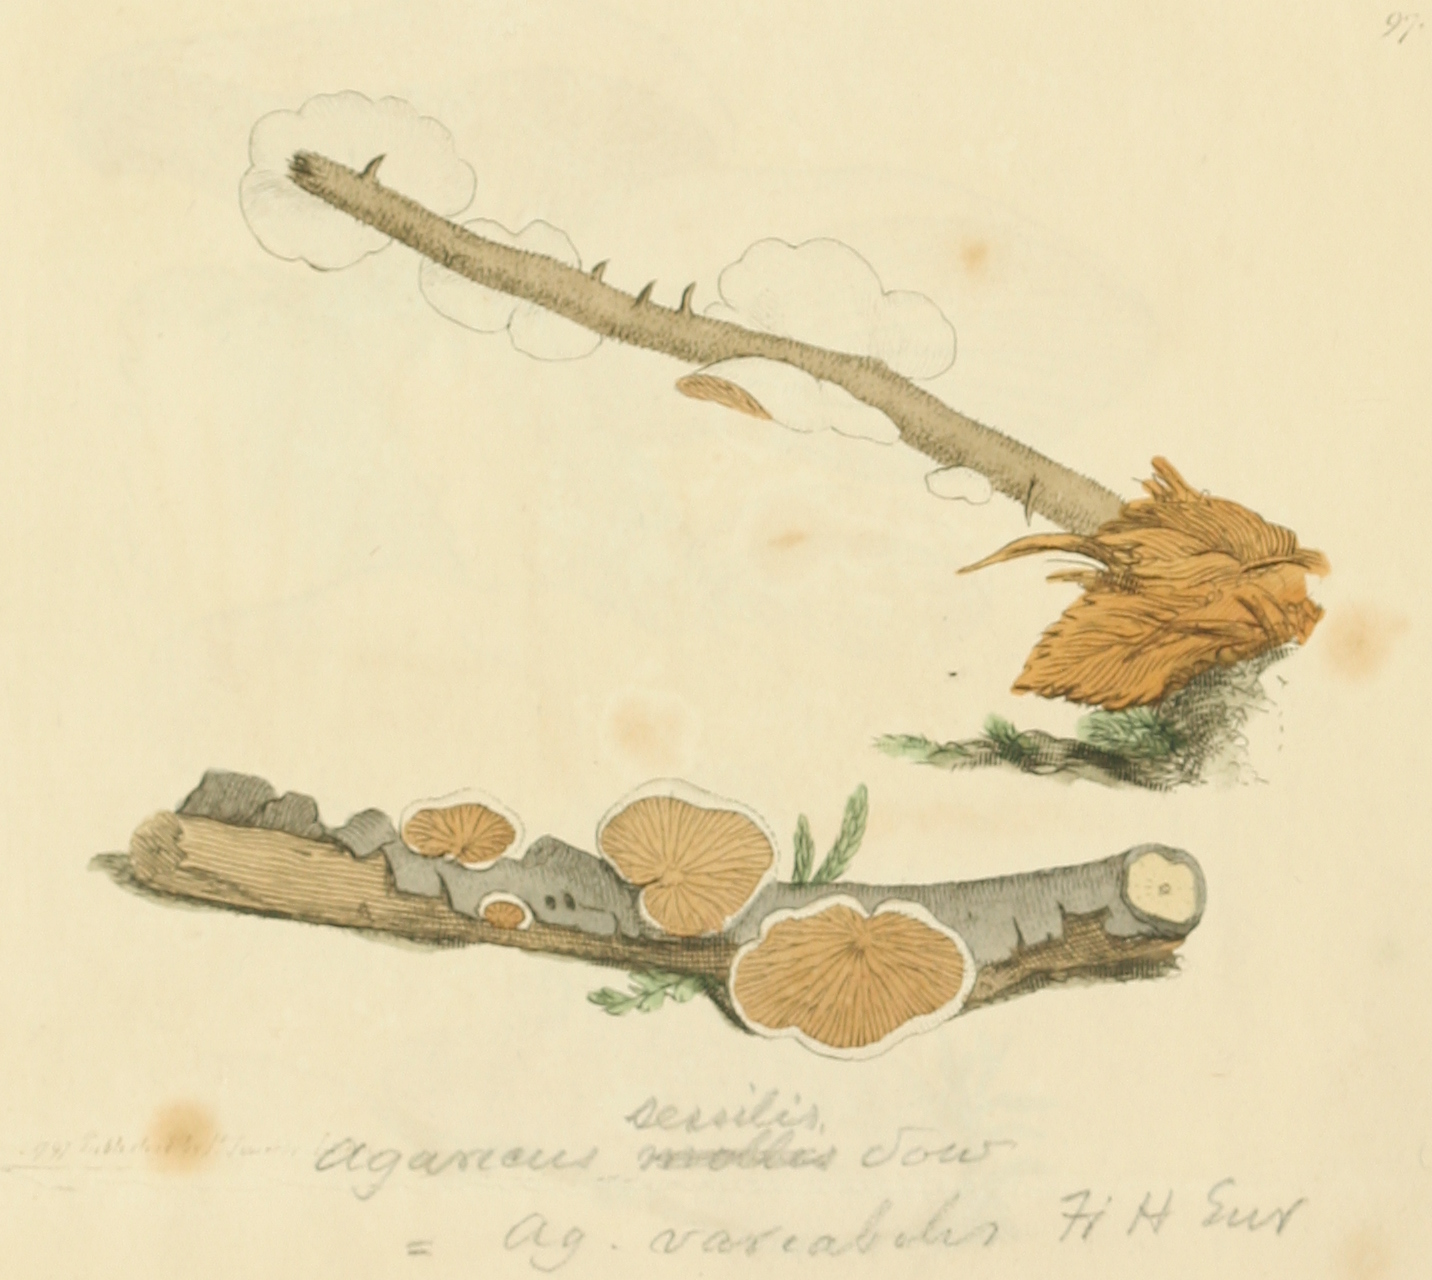 Coloured Figures of English Fungi or Mushrooms